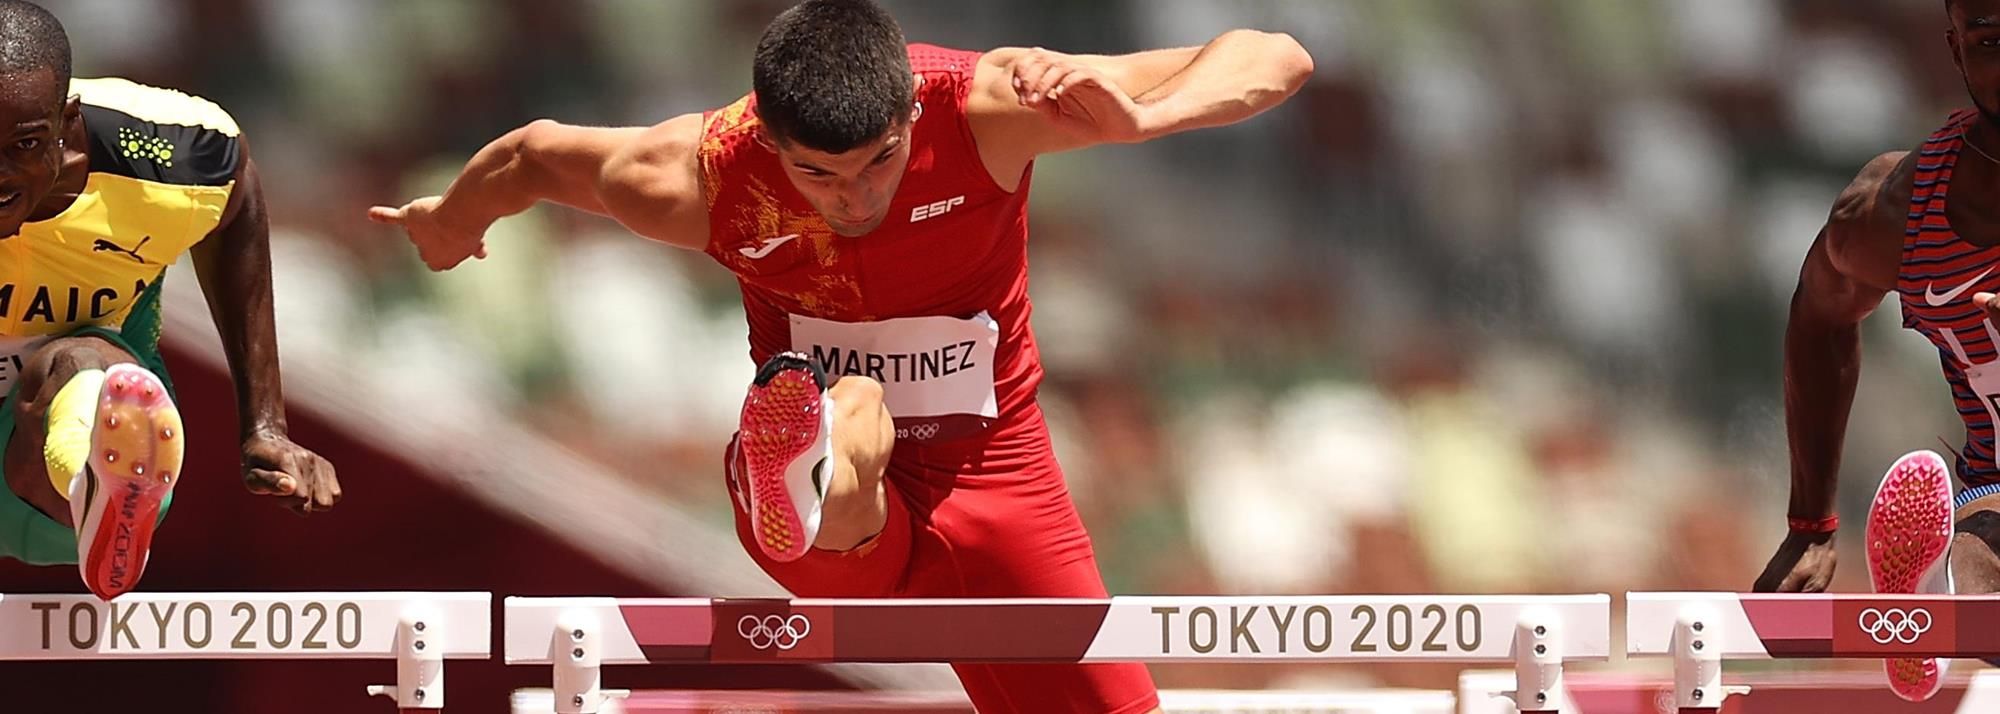 Asier MARTÍNEZ | Profile | World Athletics